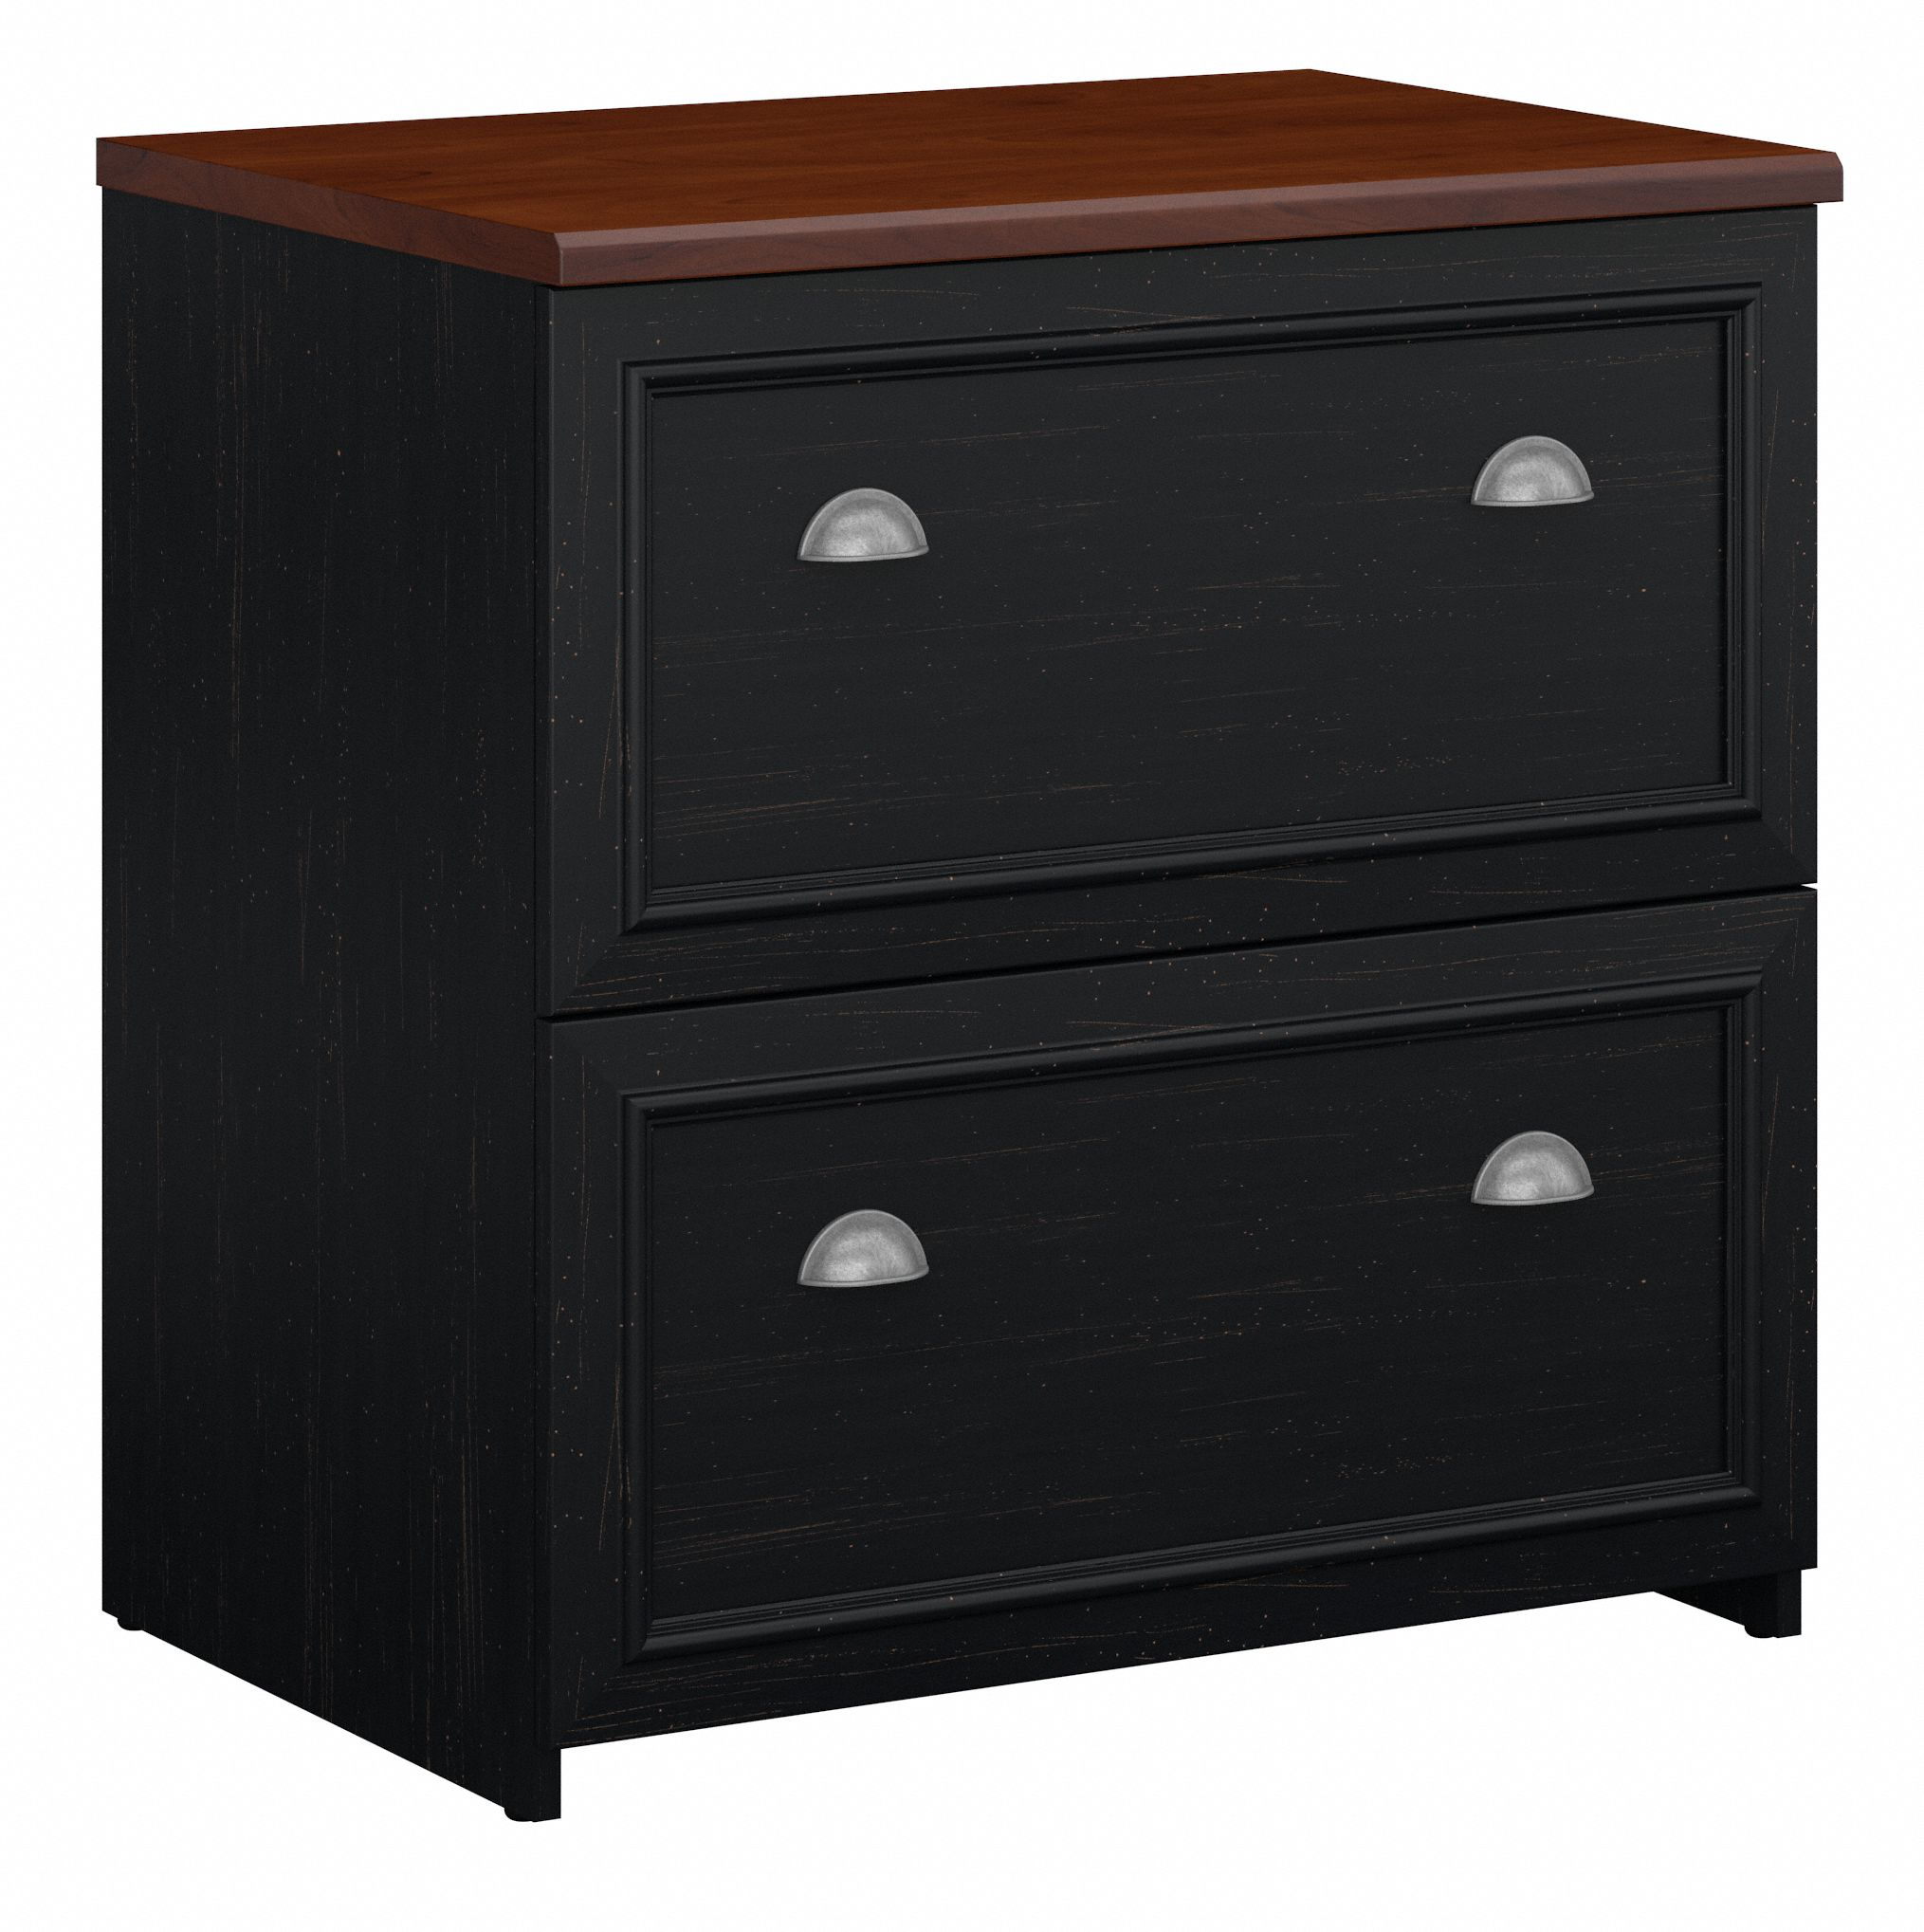 Shop Bush Furniture Fairview 2 Drawer Lateral File Cabinet 02 WC53981-03 #color_antique black/hansen cherry